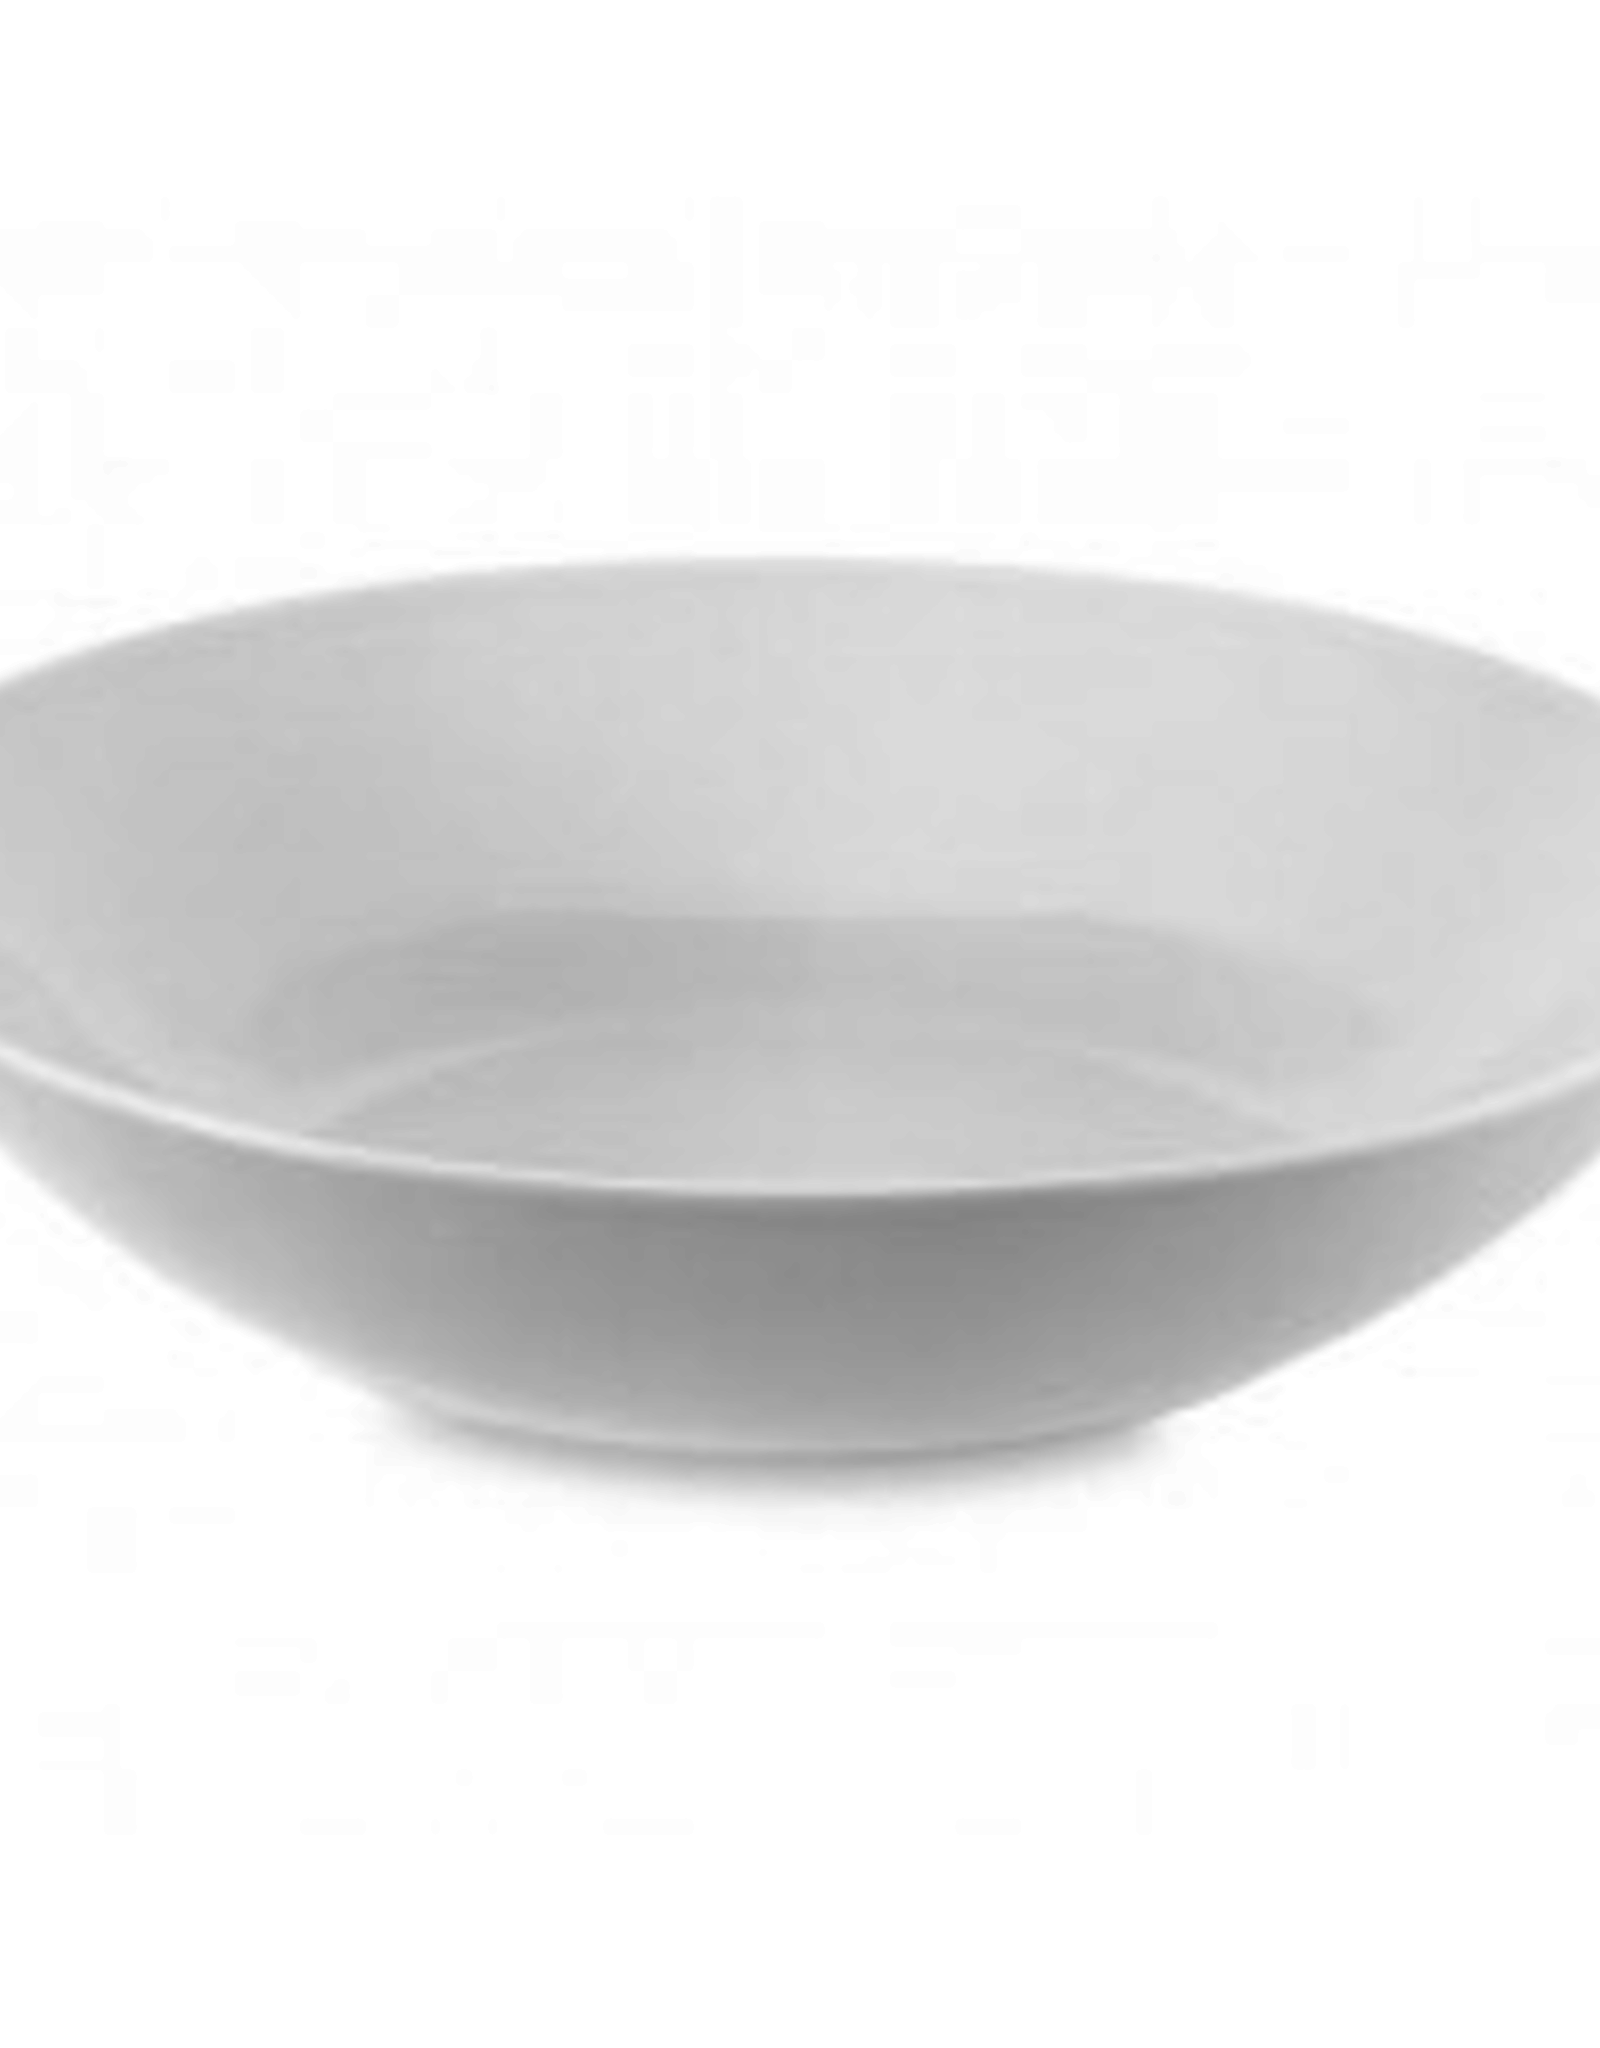 Round White Pasta Bowl D10”